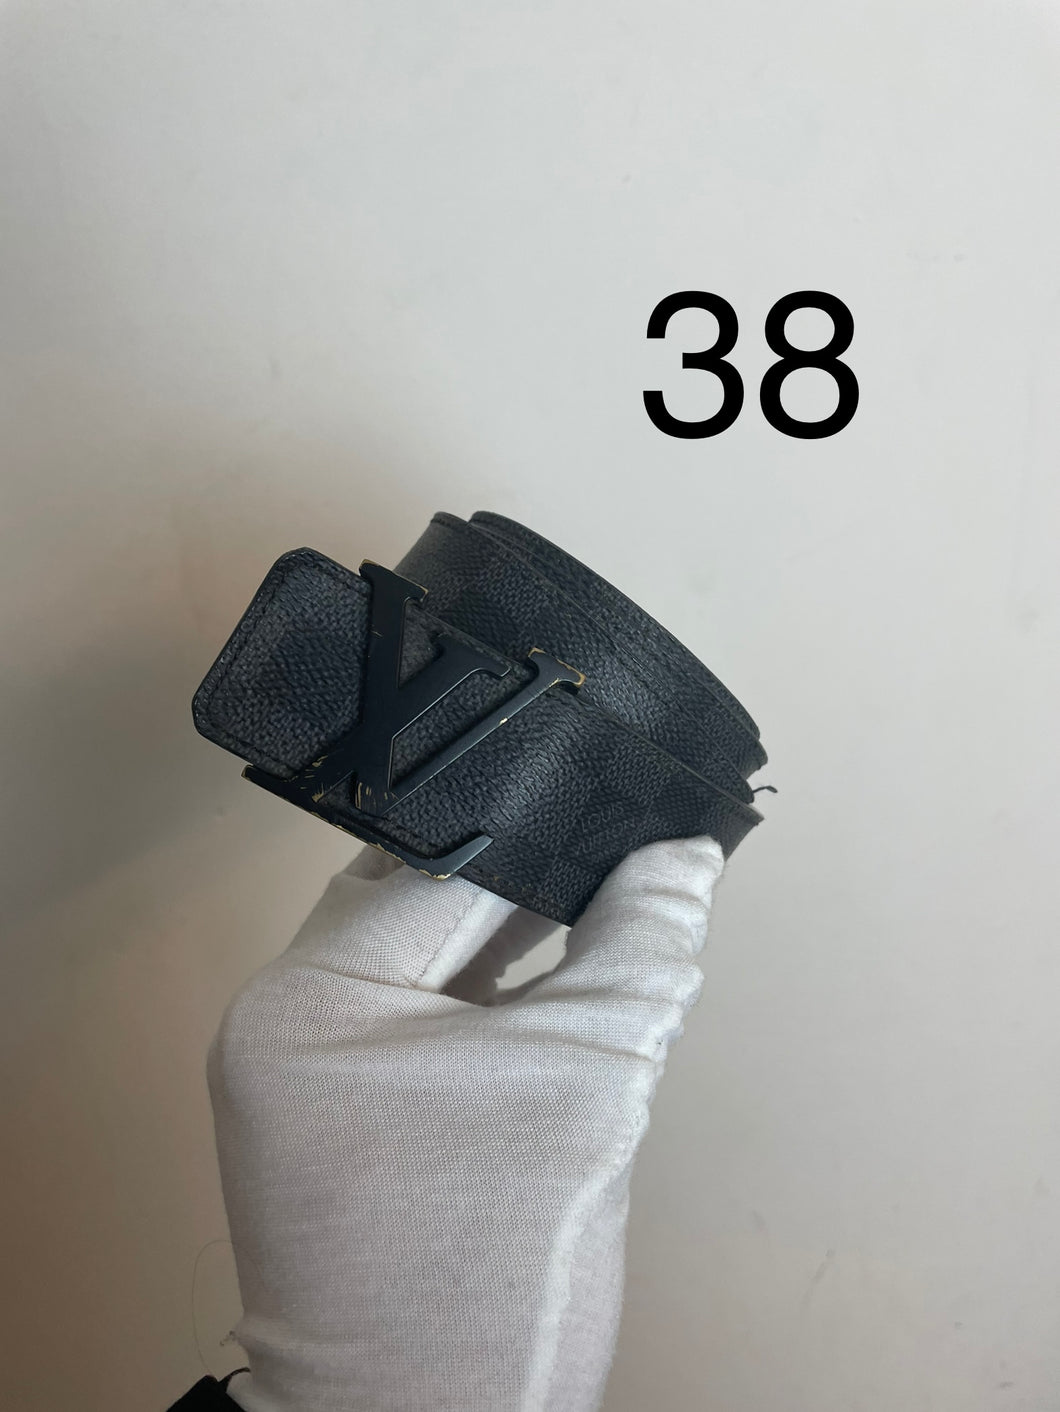 Louis Vuitton damier graphite initials belt black buckle sz 38 (fits 32-36)